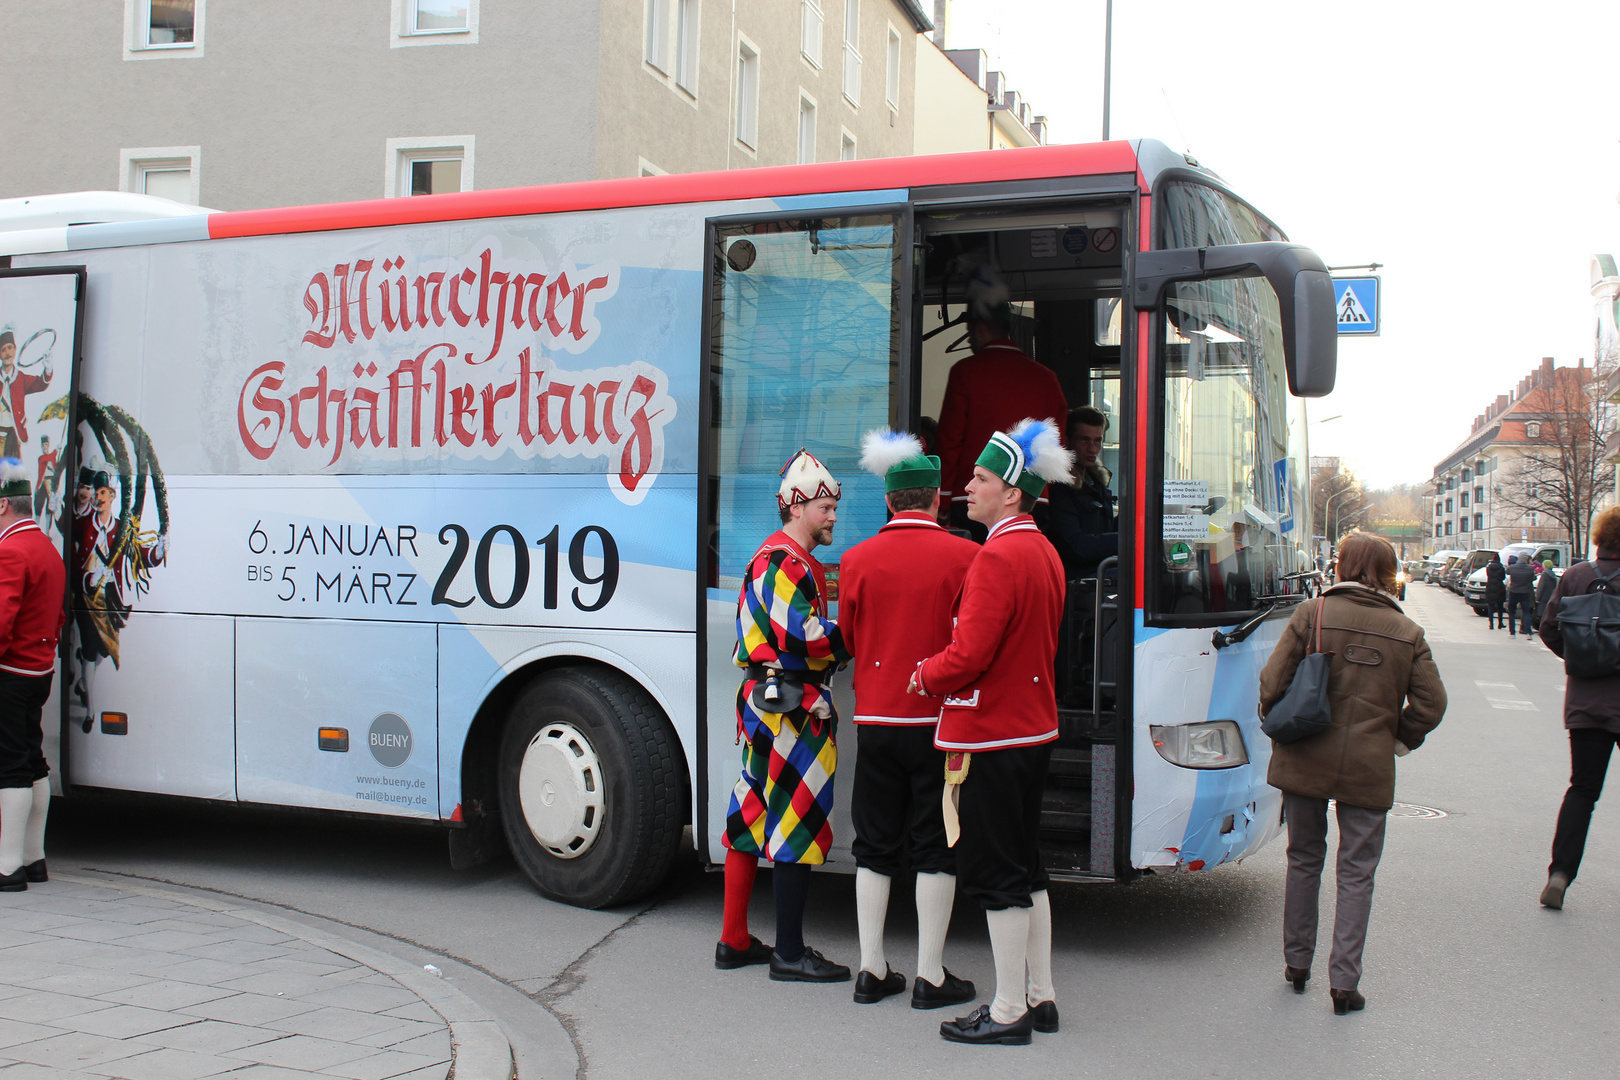 Münchner Schäfflertanz 6. Januar bis 5. März 2019